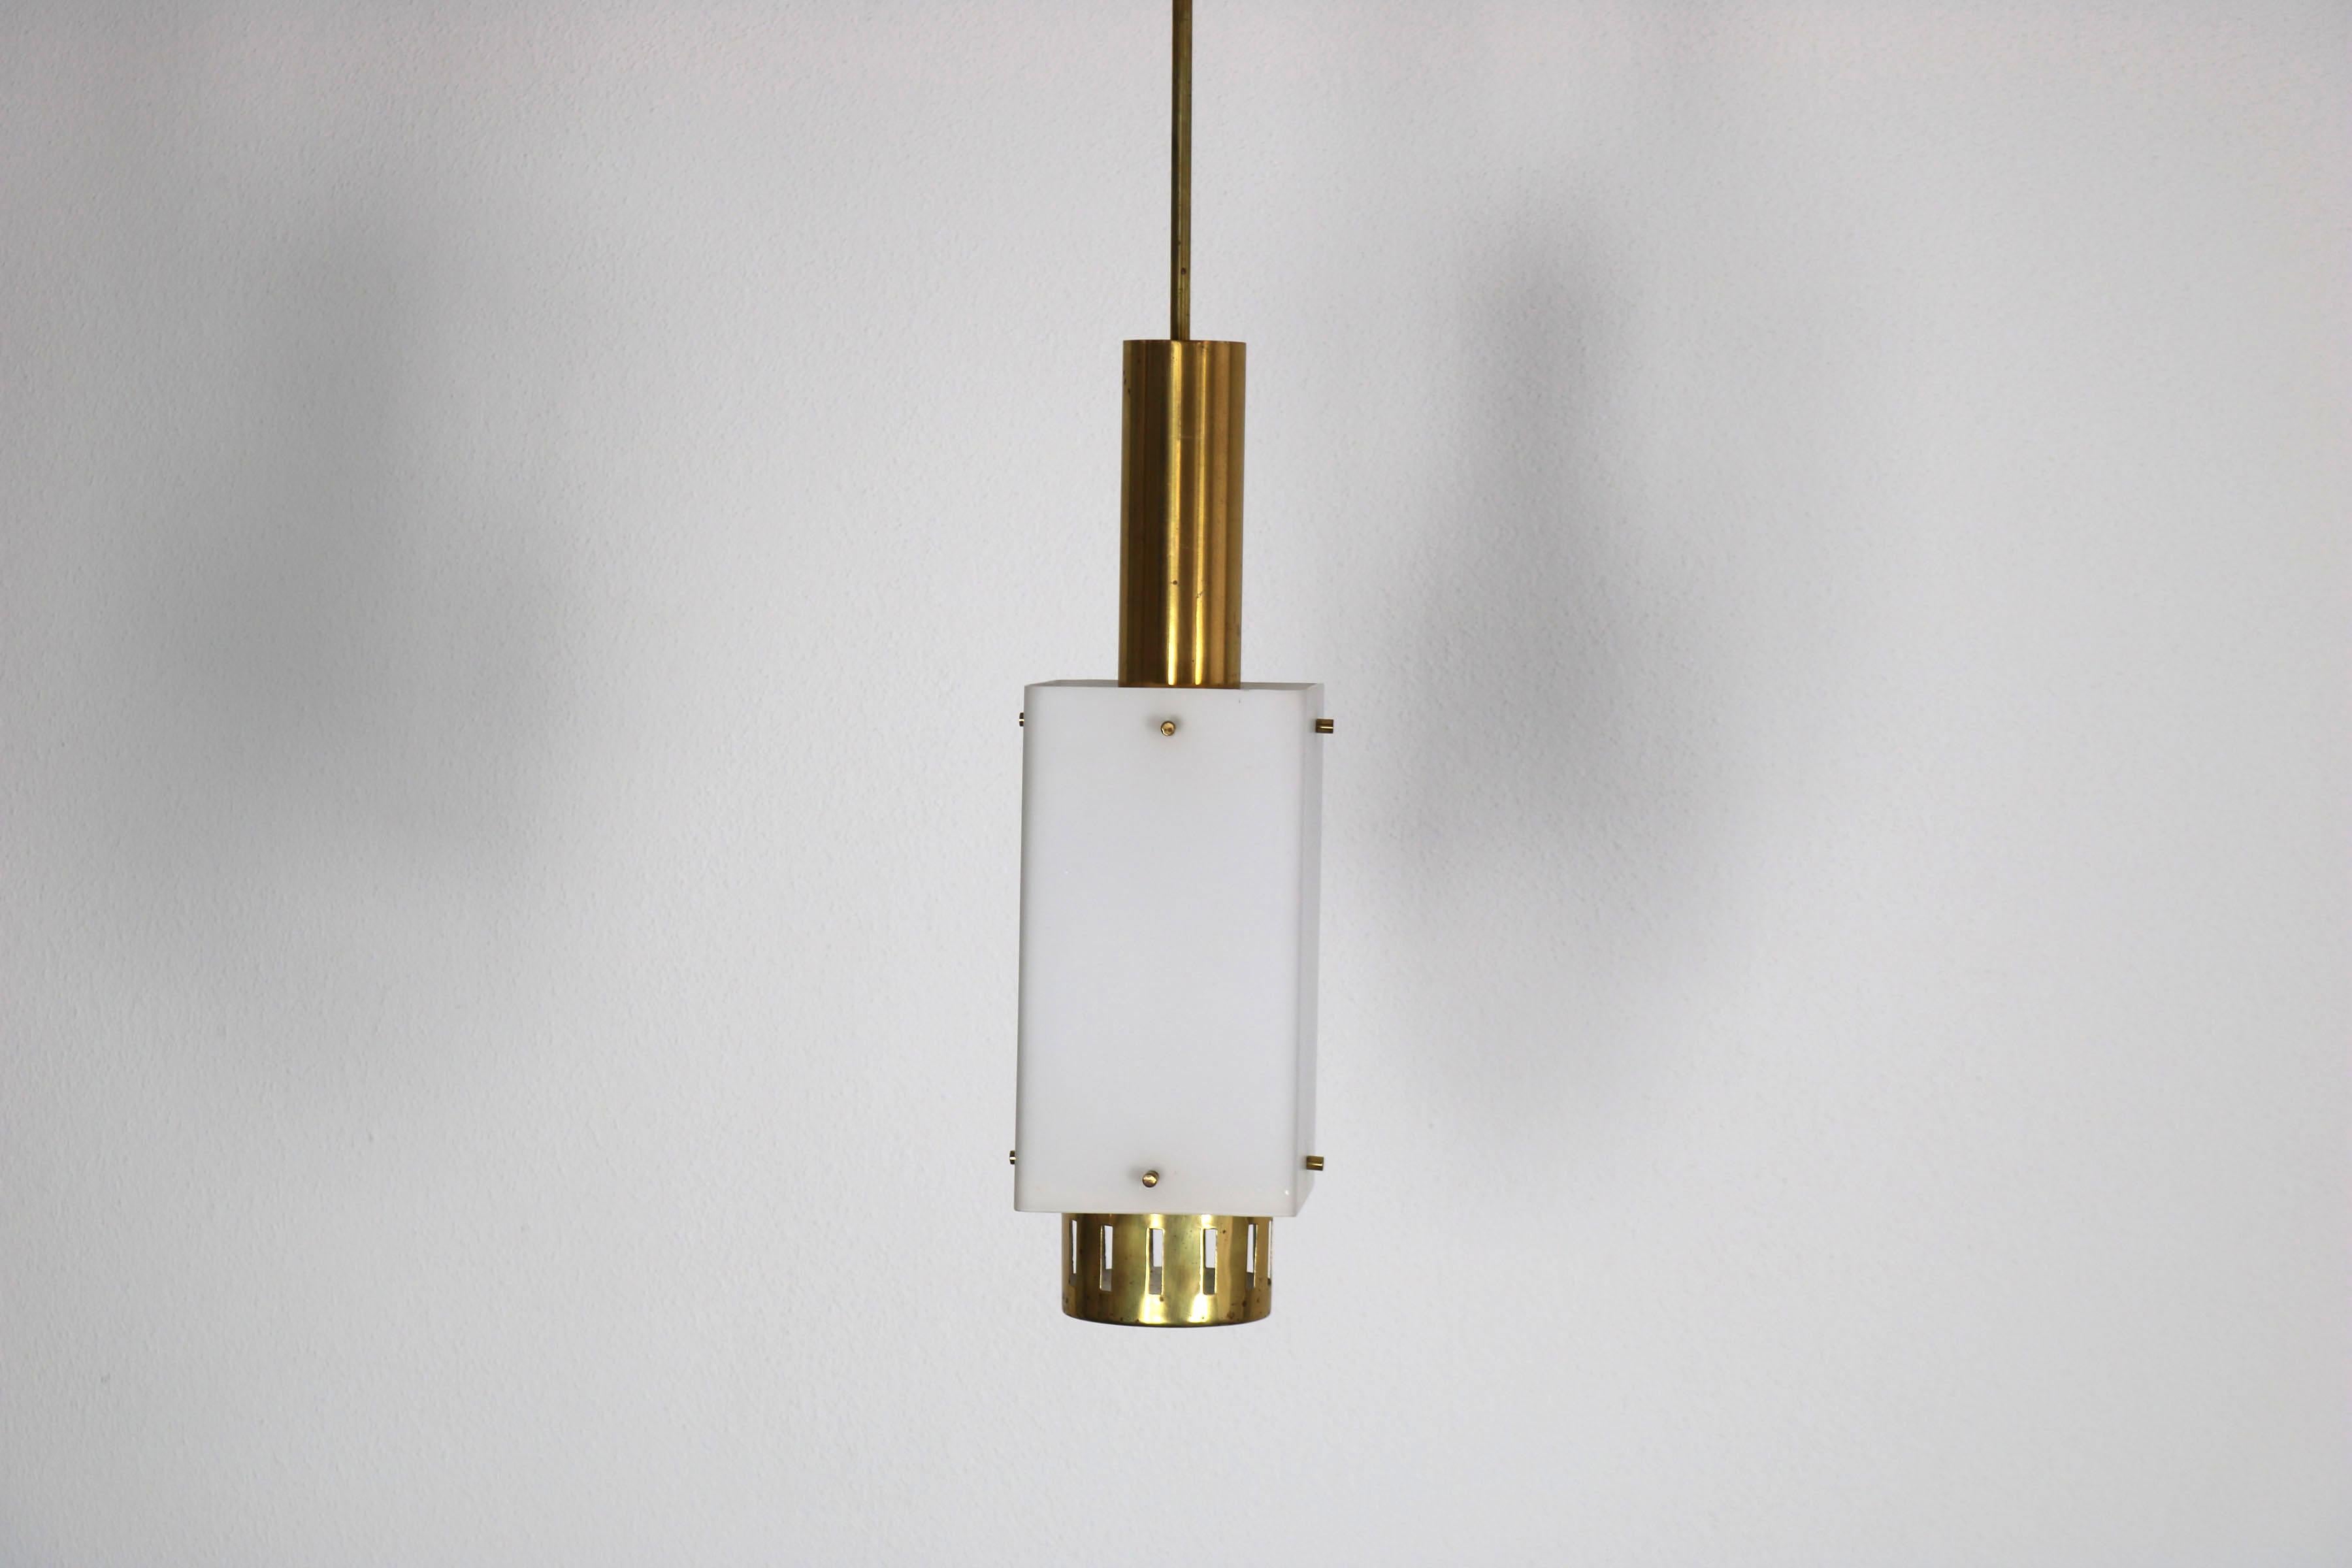 Lampe suspendue Stilnovo Italie, années 1950. La lampe est dotée d'un abat-jour en verre opale et d'éléments en laiton.

N'hésitez pas à demander plus d'informations.

